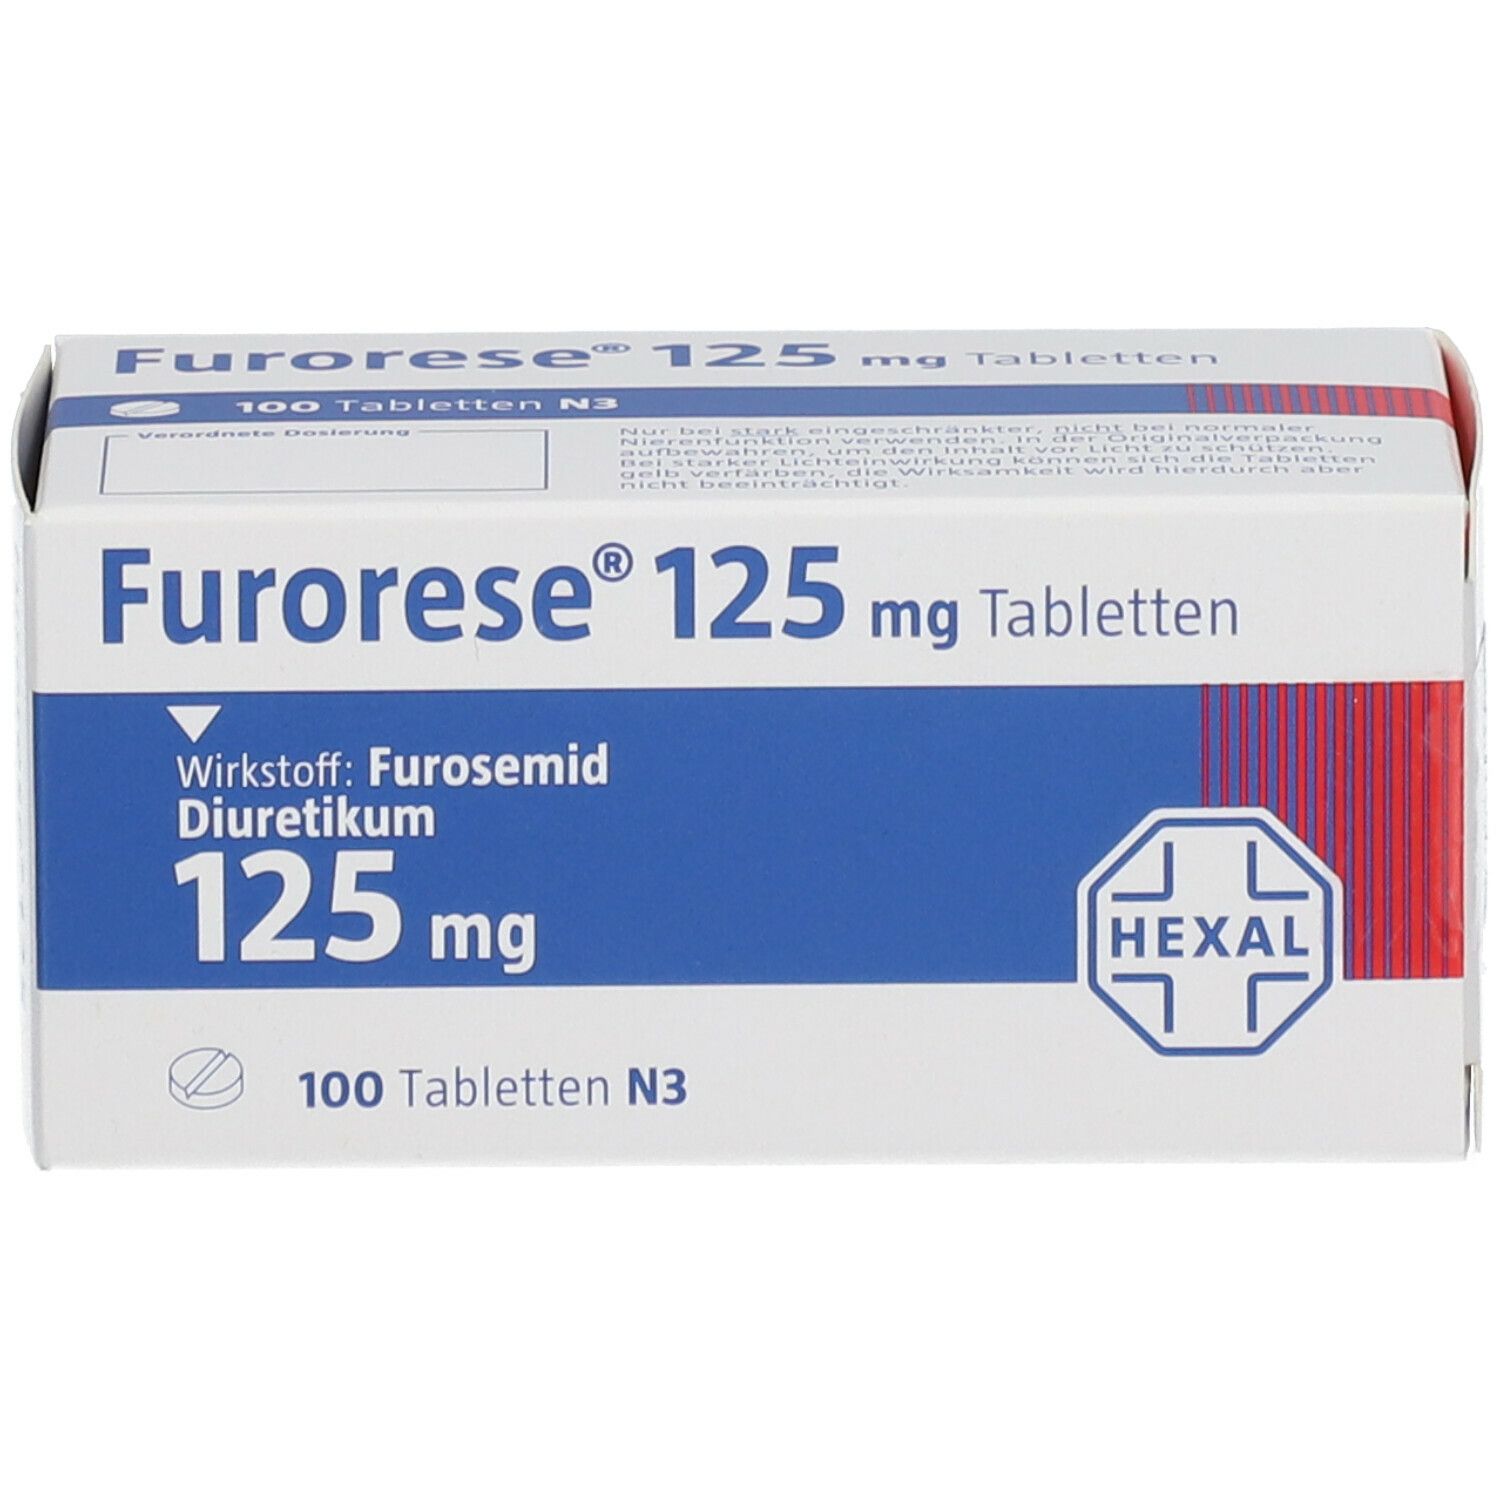 Furorese® 125 mg